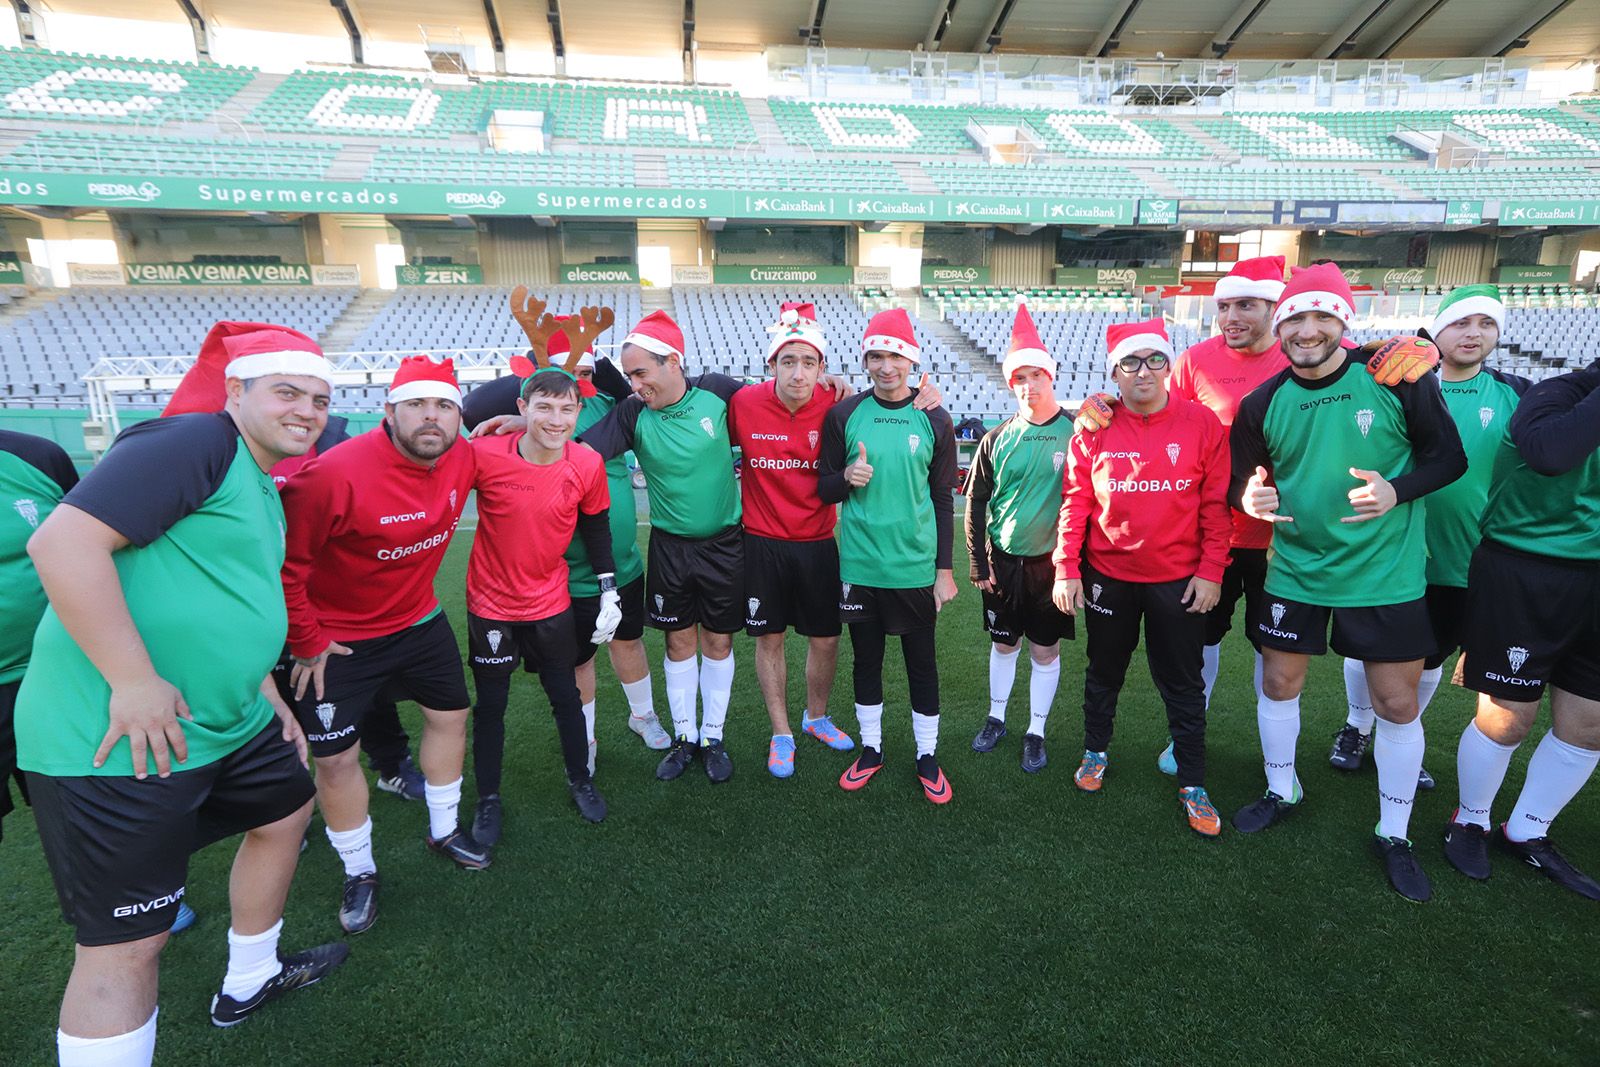 El Córdoba CF Genuine y su entrenamiento de Navidad, en imágenes